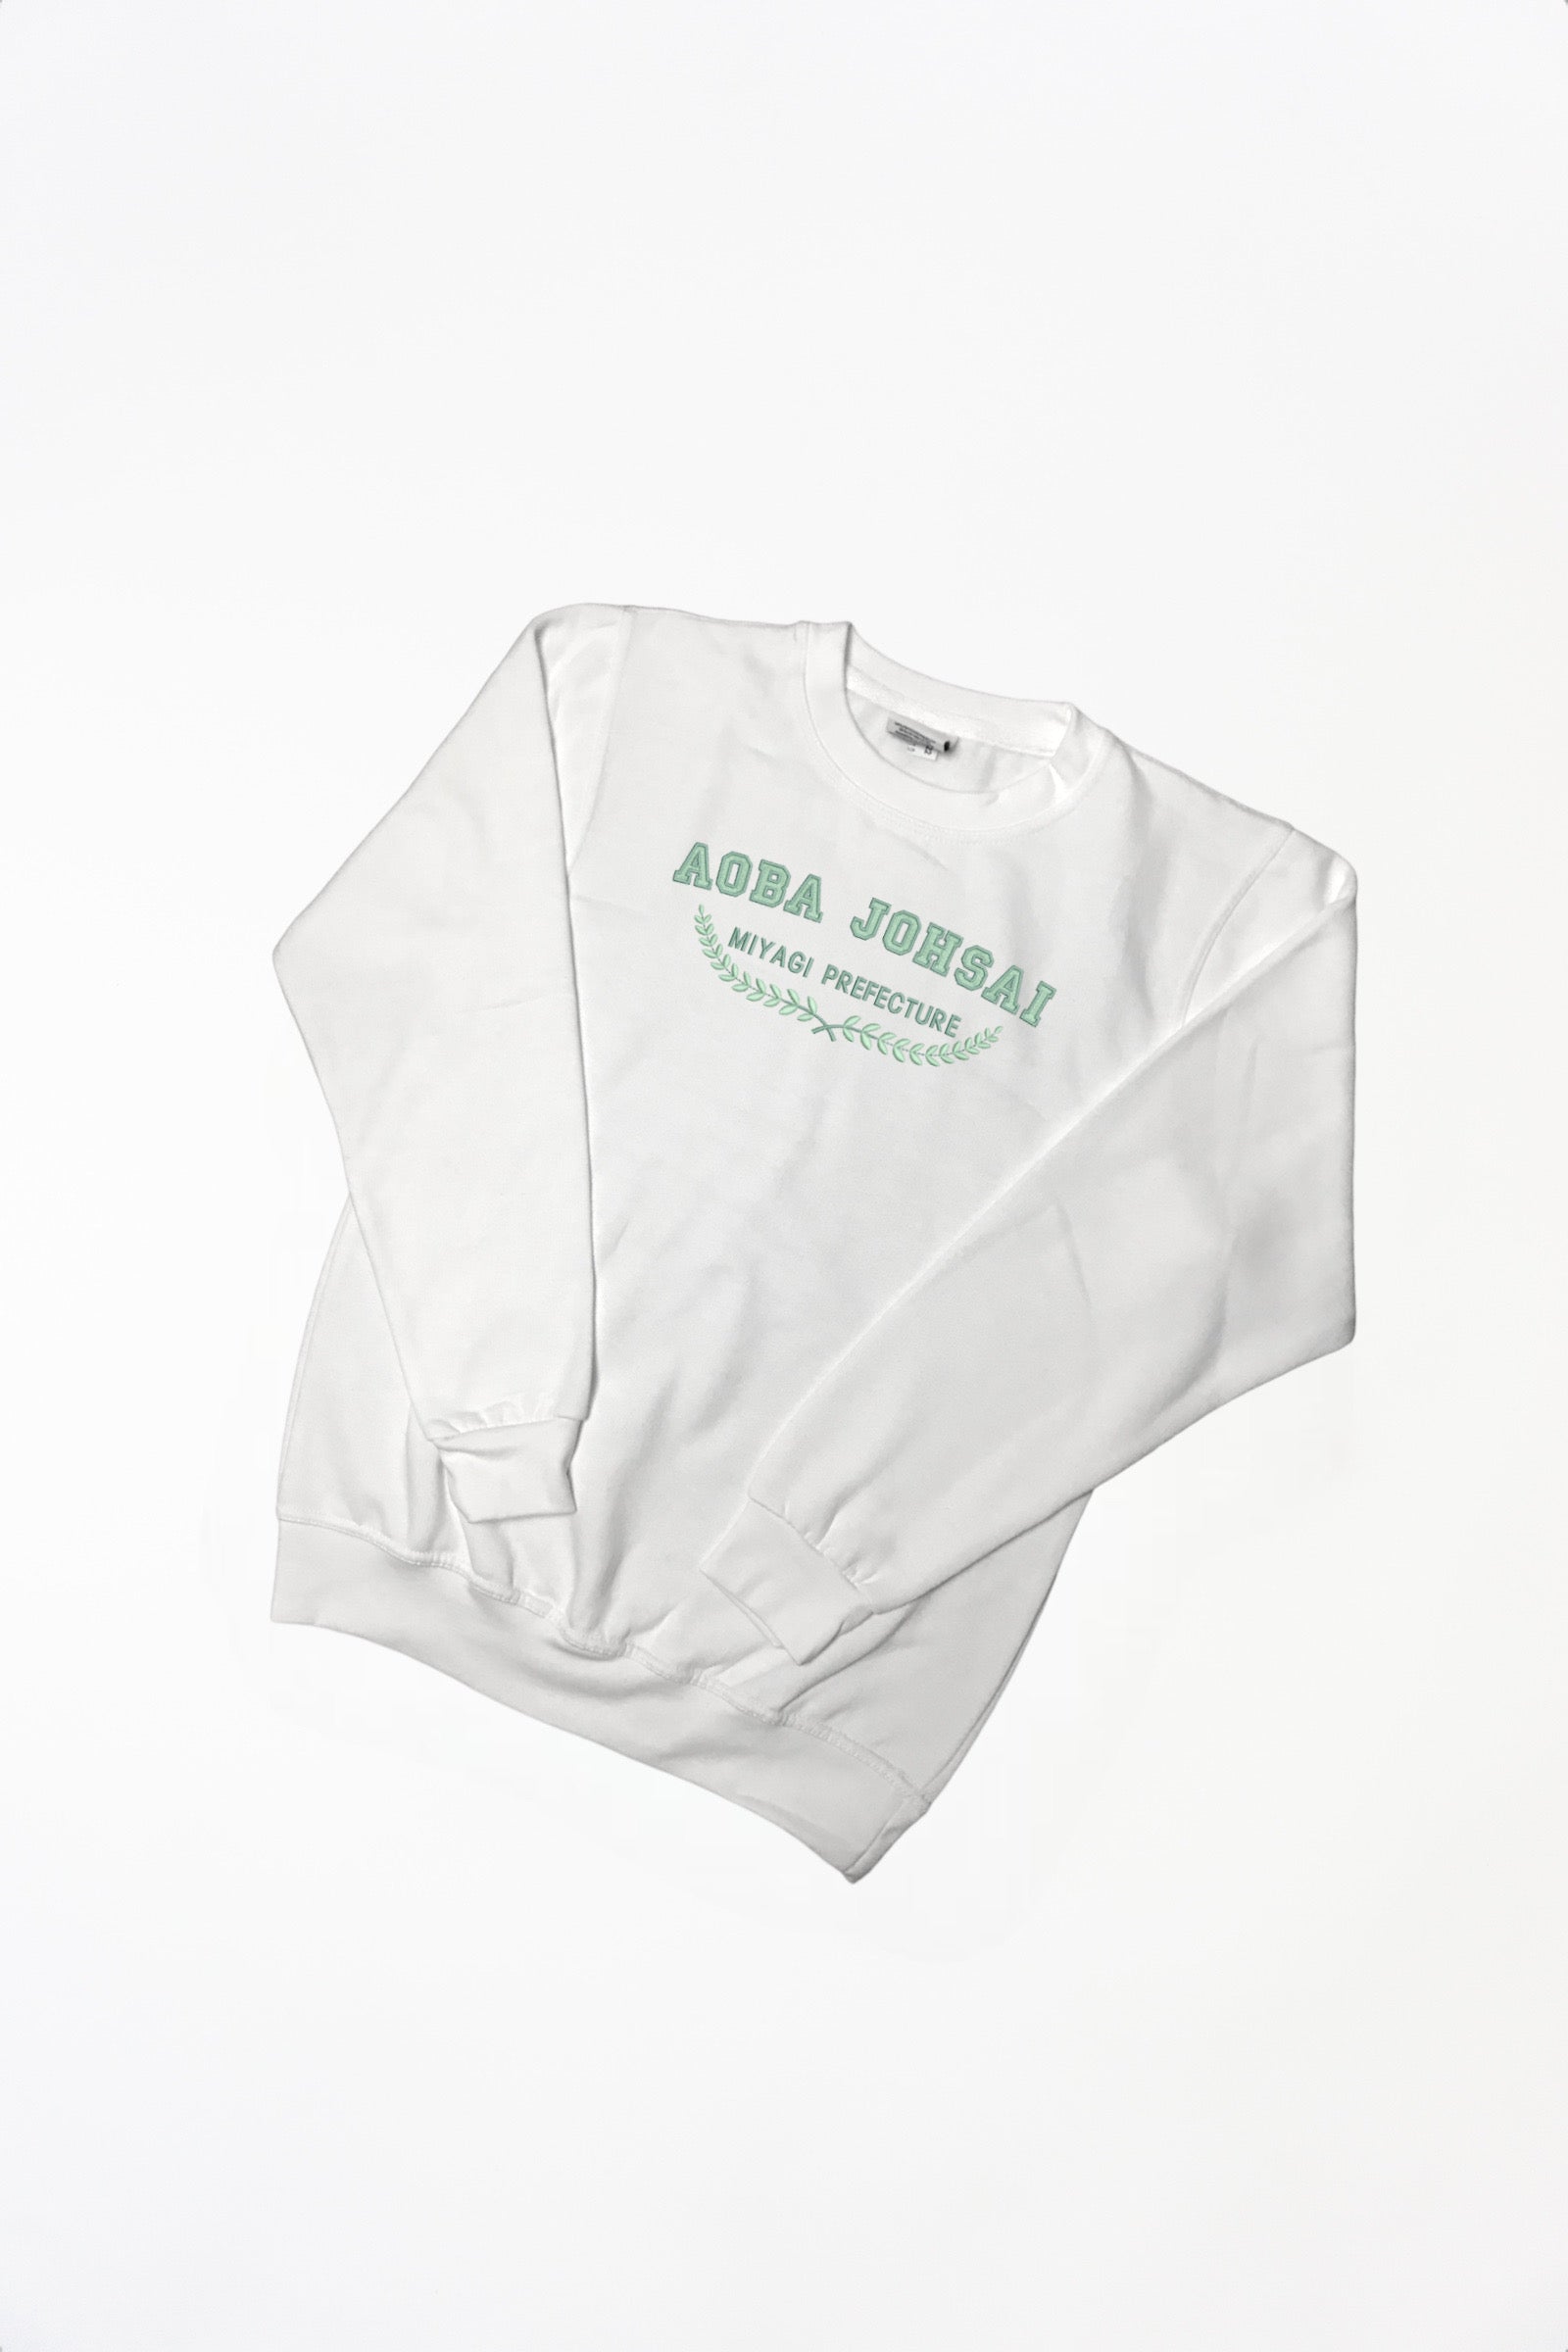 [NON PREMIUM] Aoba Johsai College Sweater